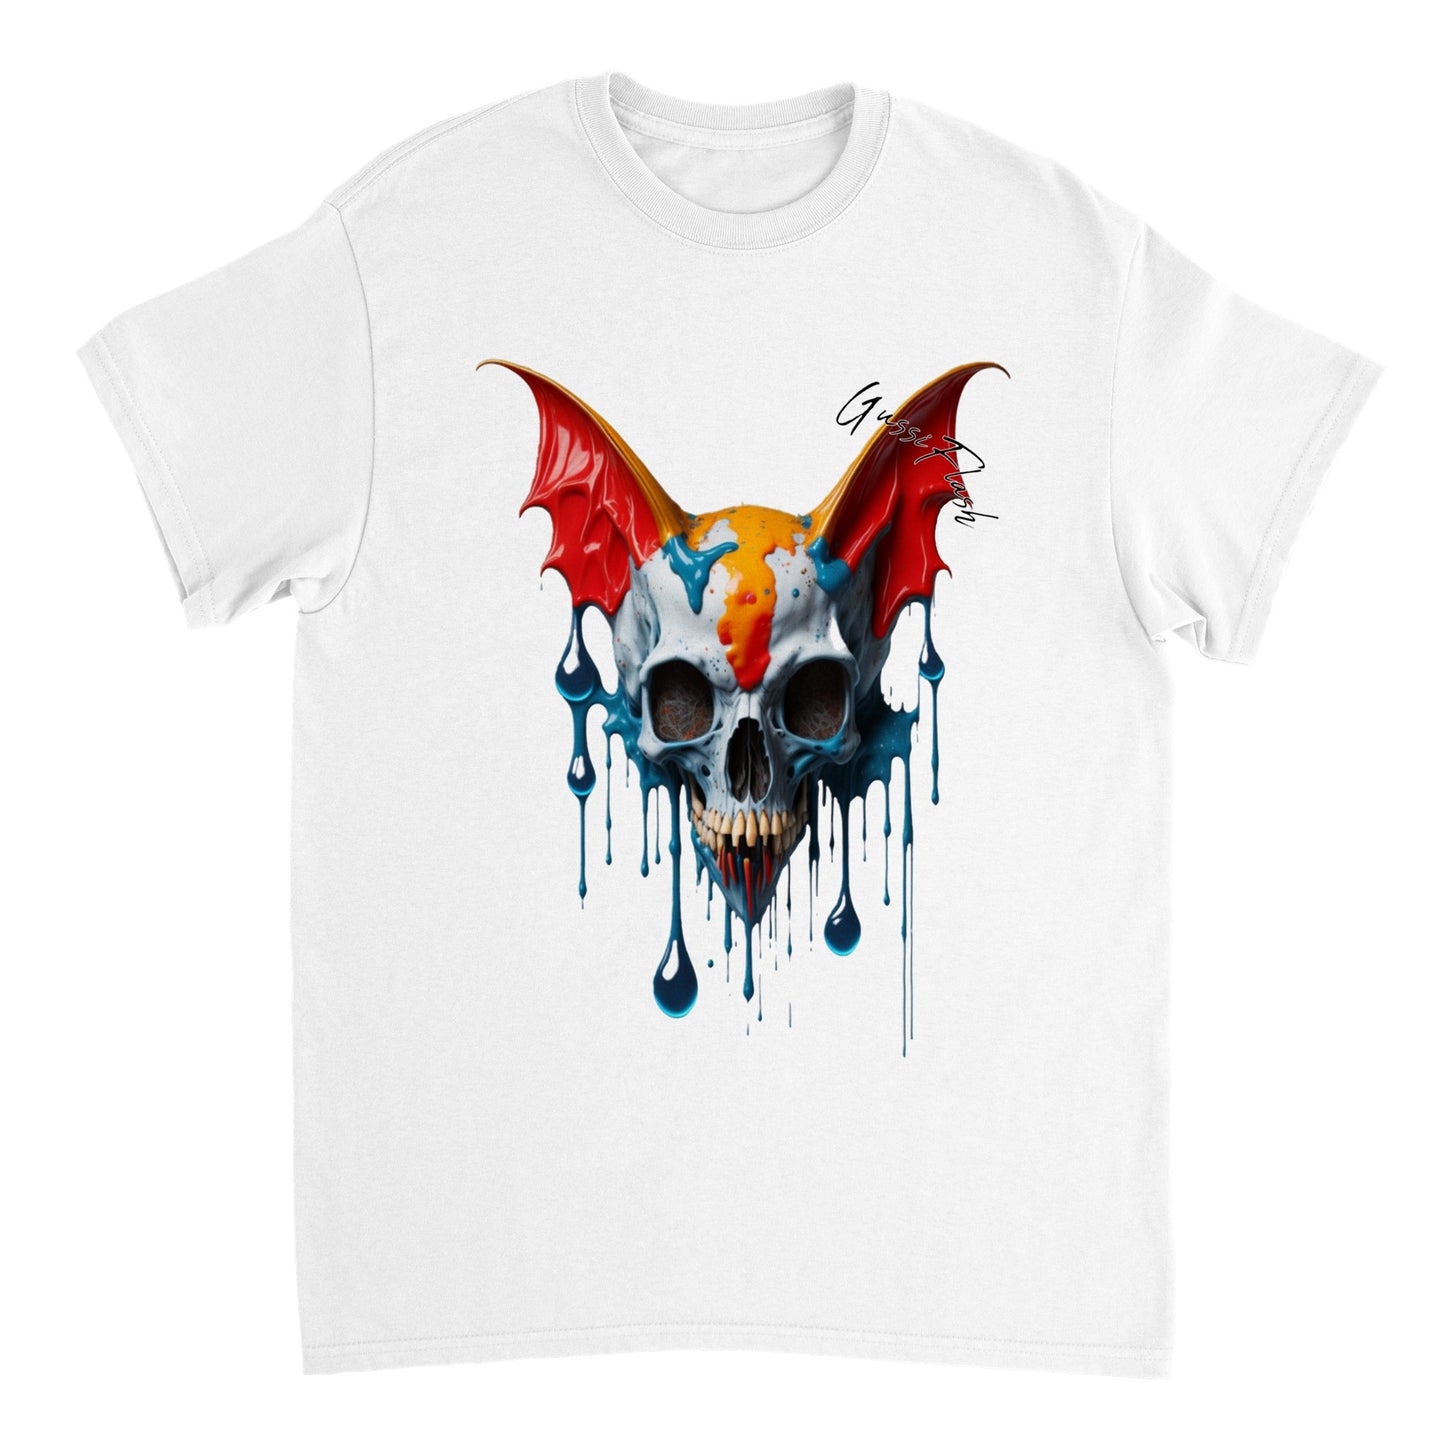 Schweres Unisex T-Shirt mit GussiFlash Skull